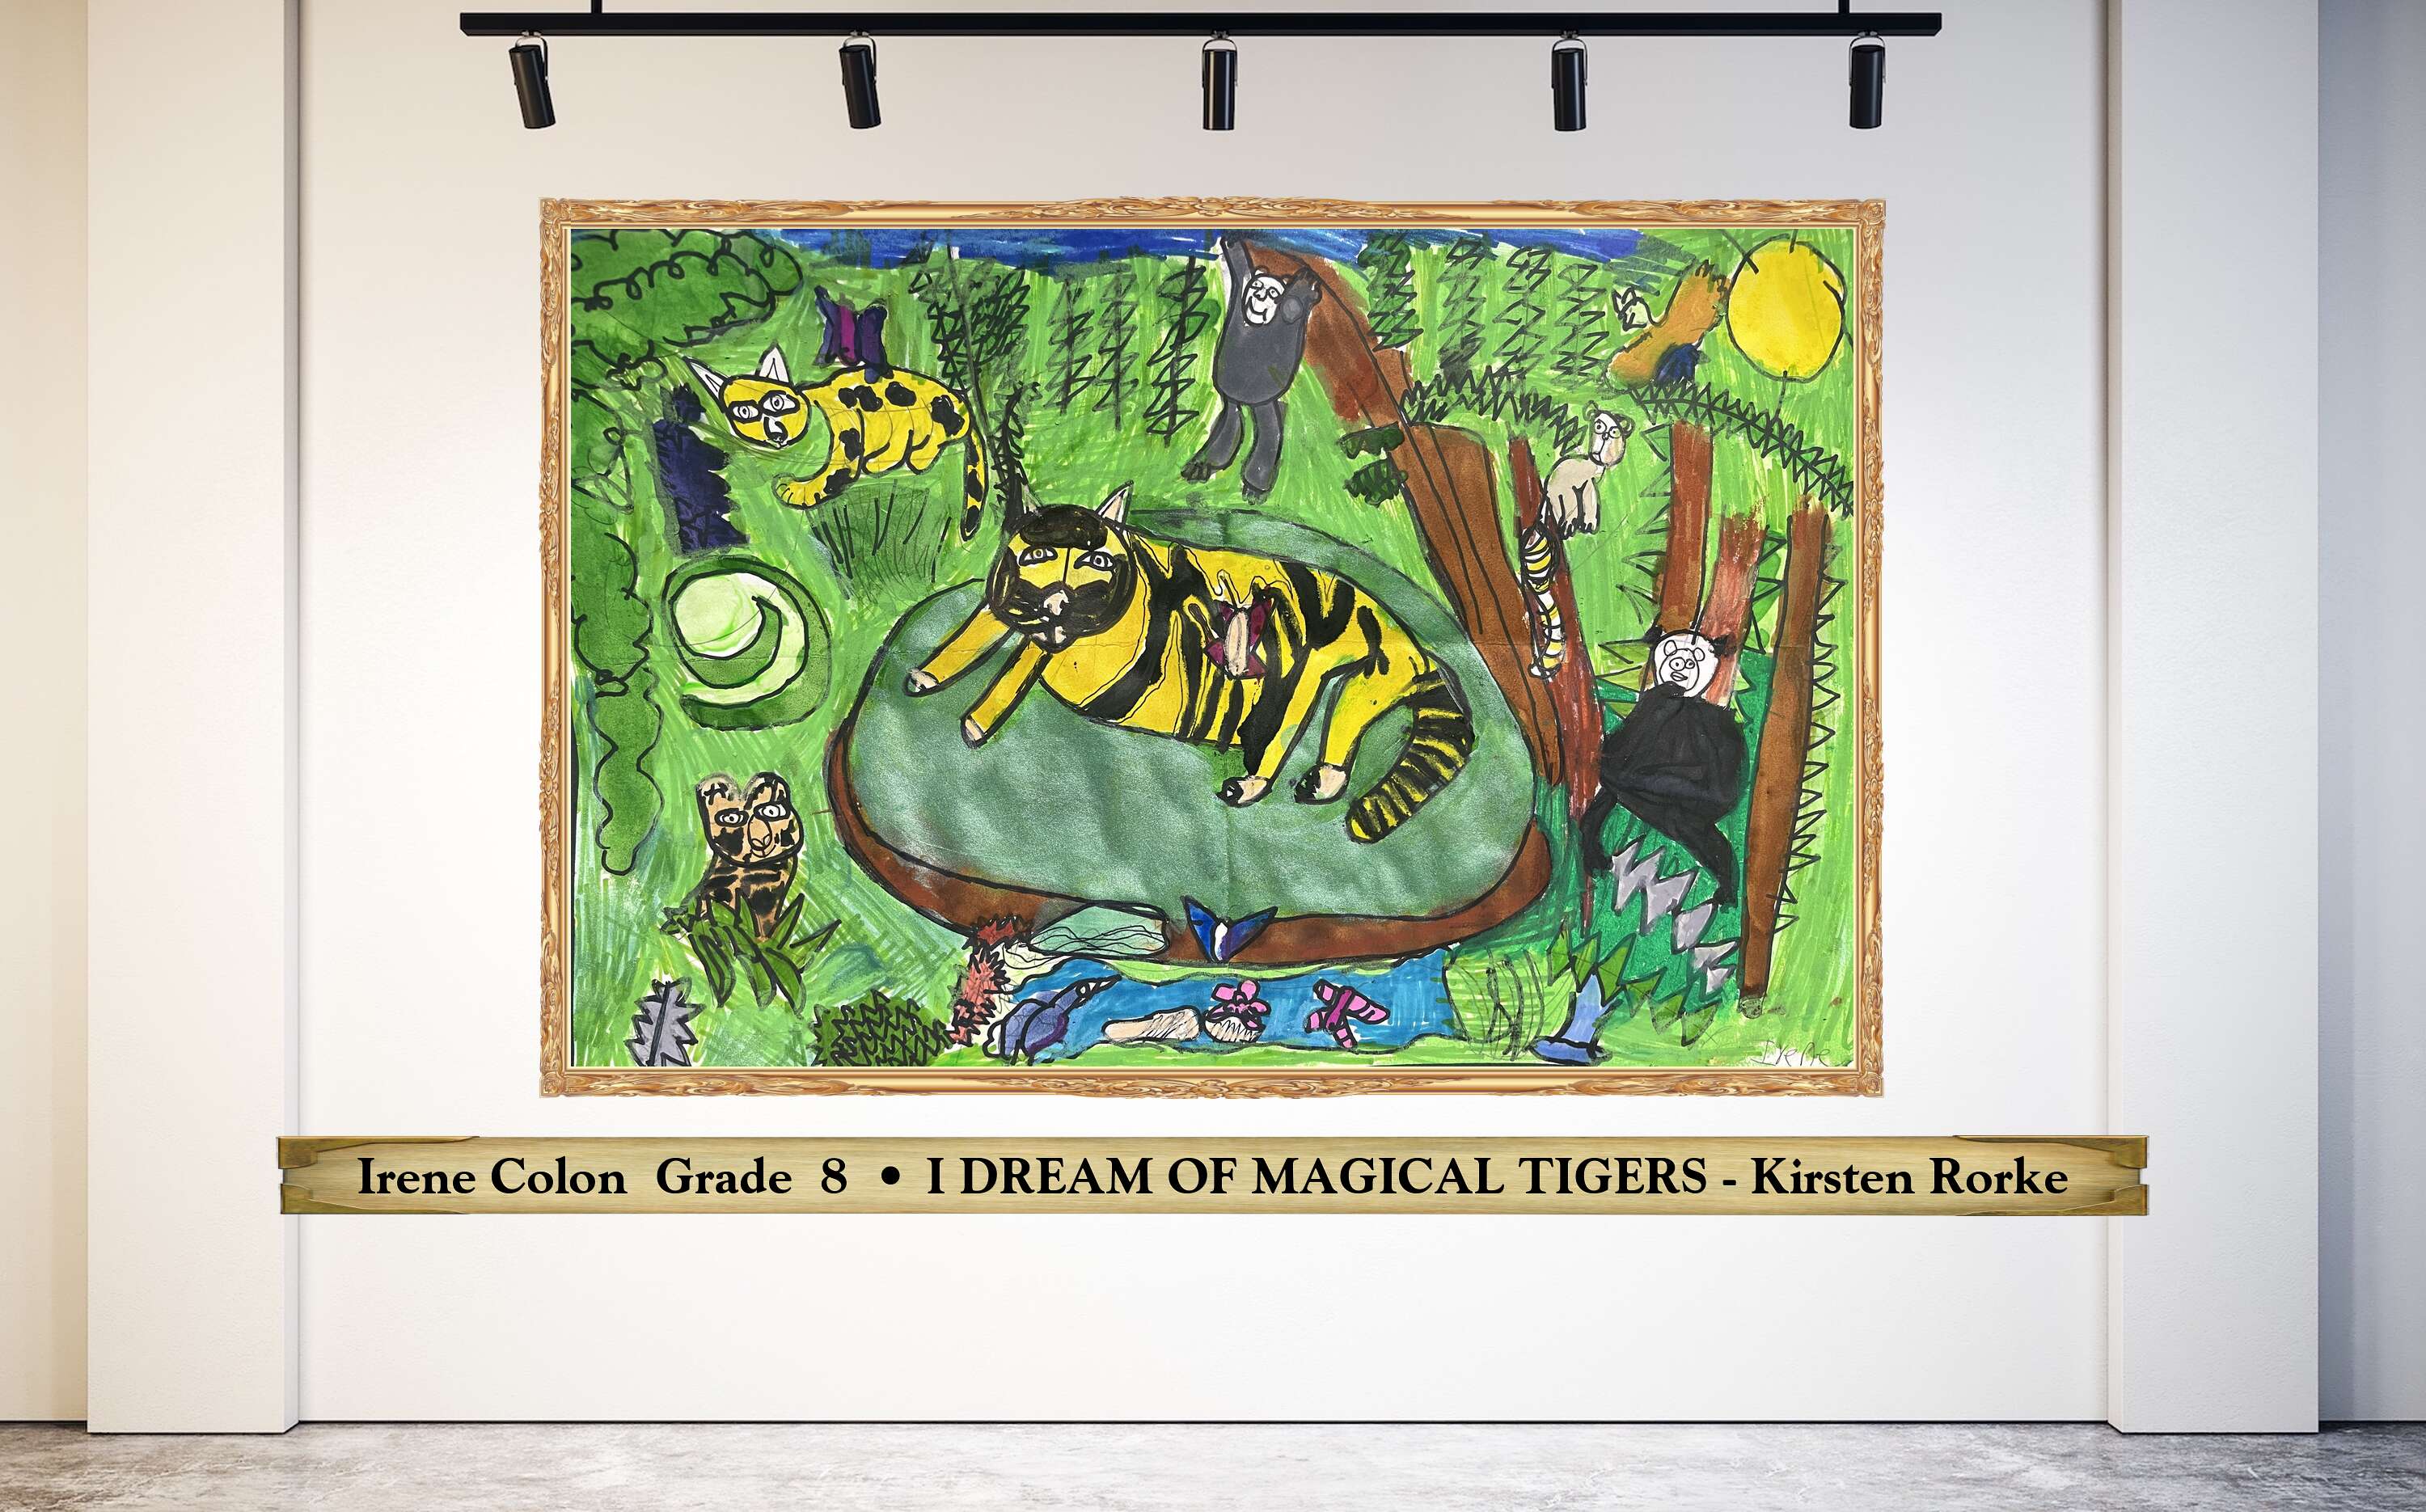 Irene Colon  Grade  8  • I DREAM OF MAGICAL TIGERS - Kirsten Rorke